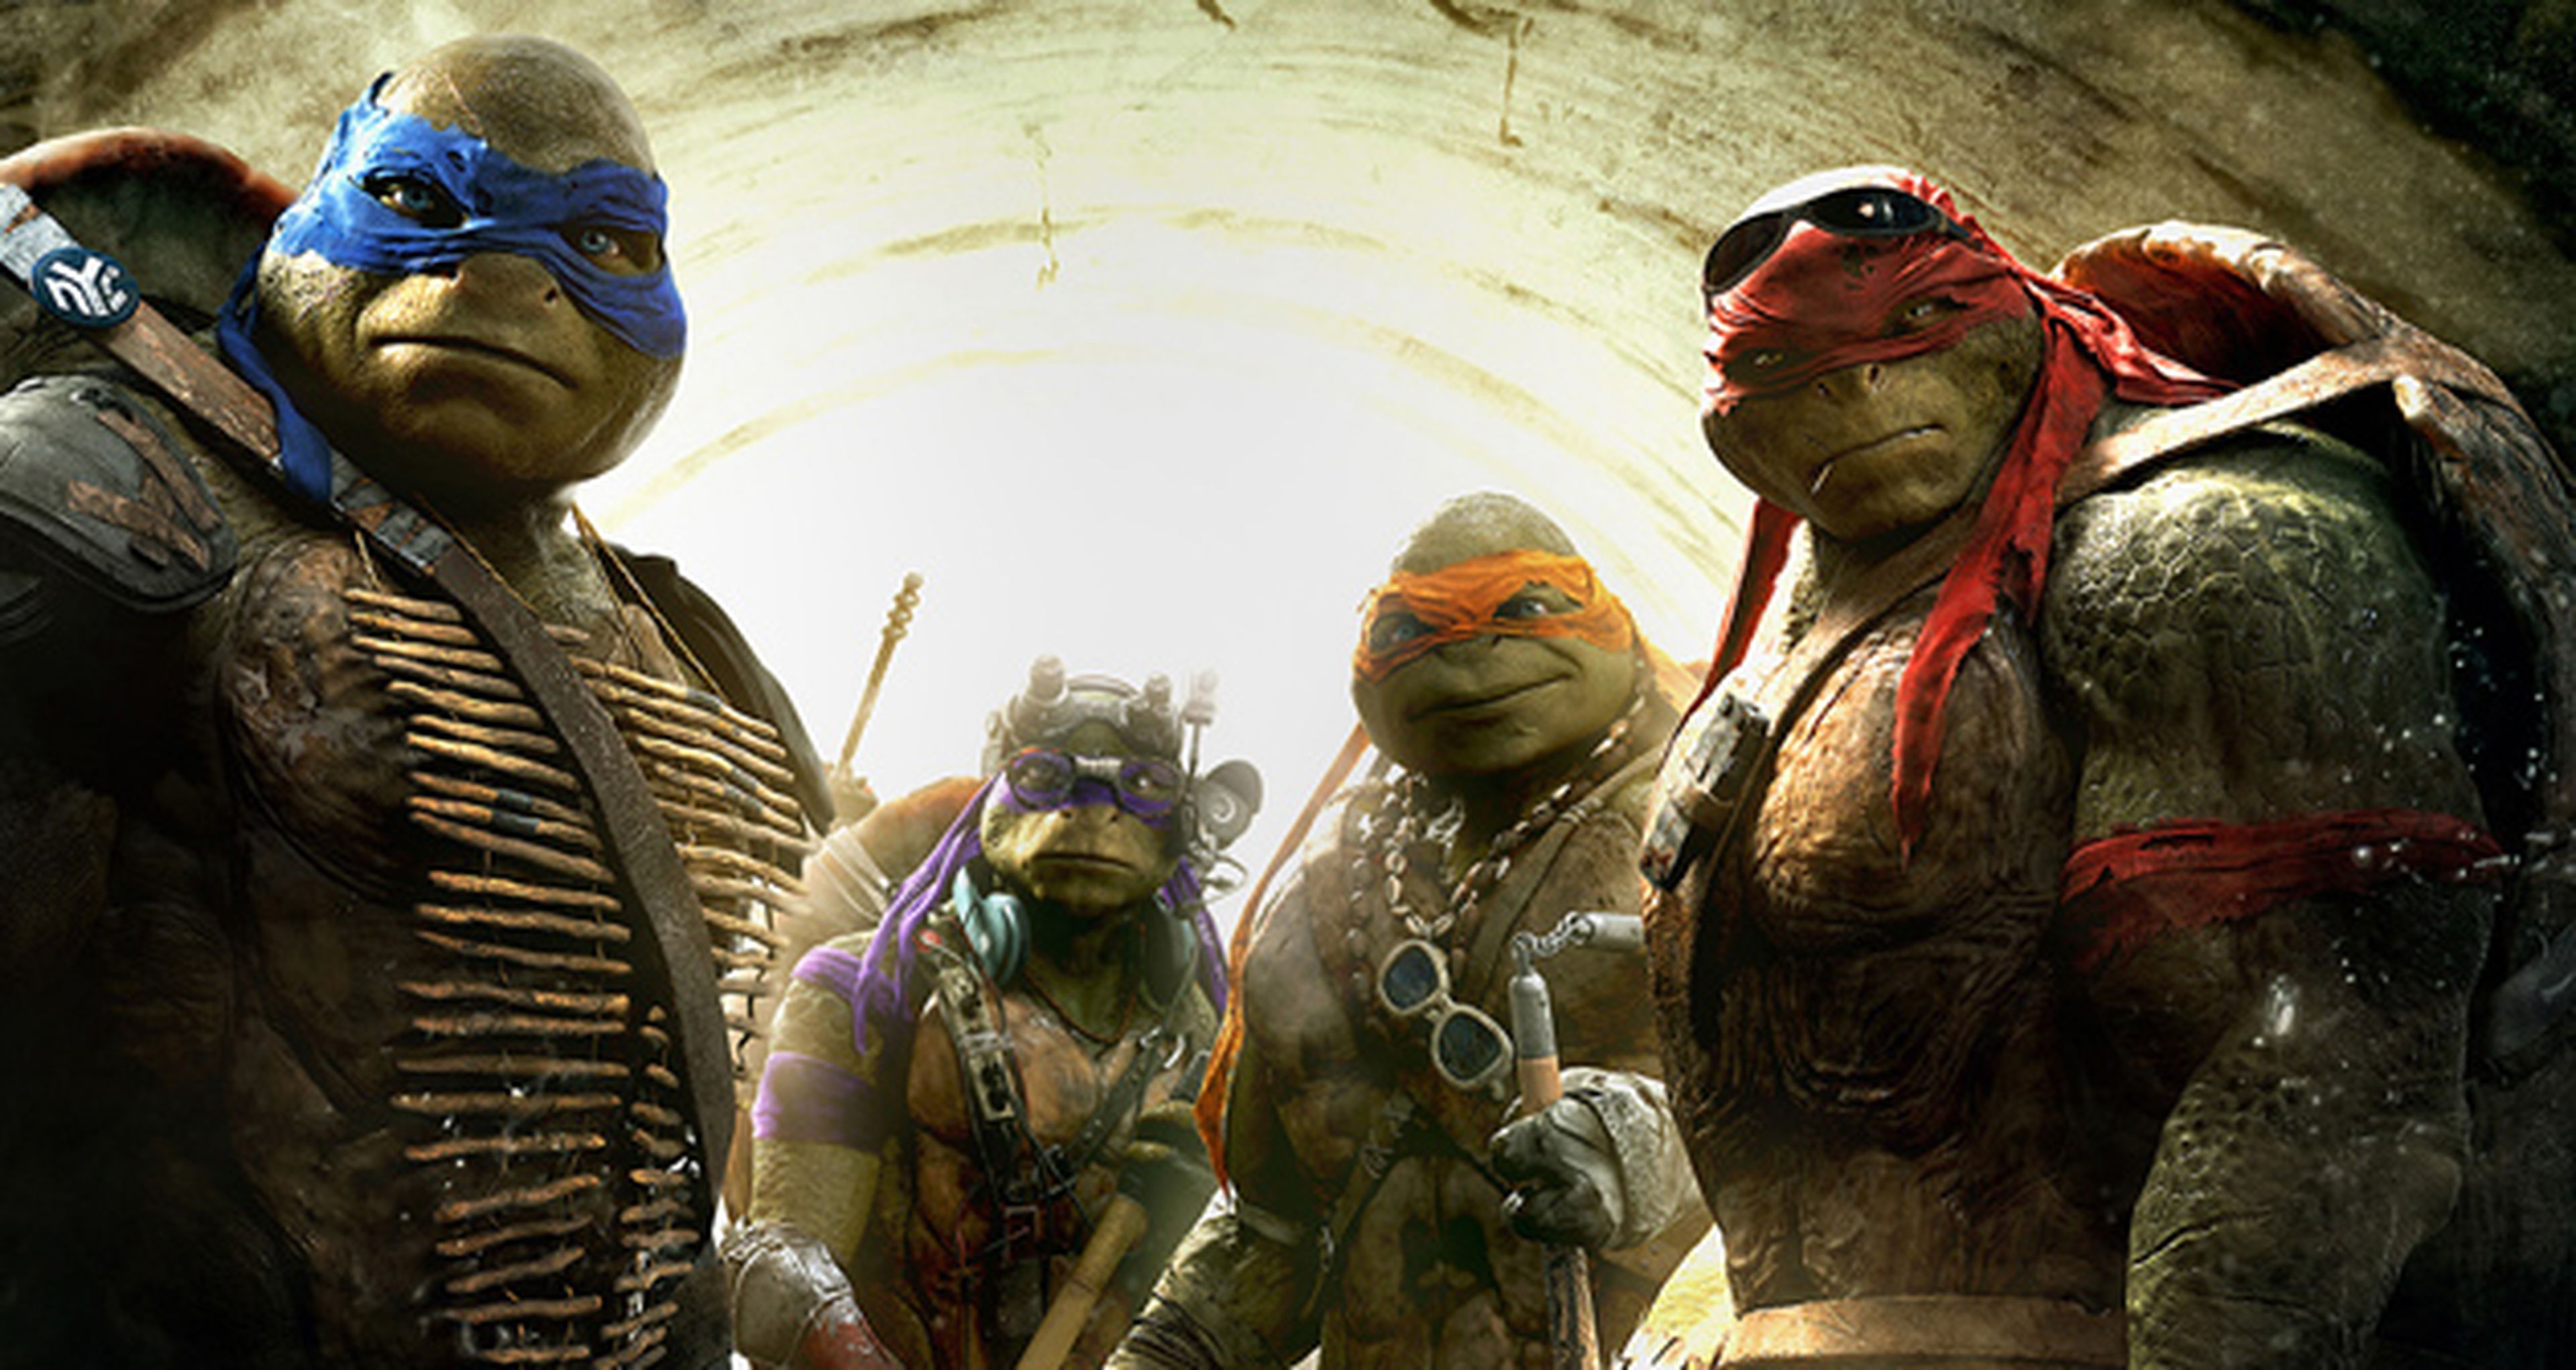 Ninja Turtles: Recordando los orígenes